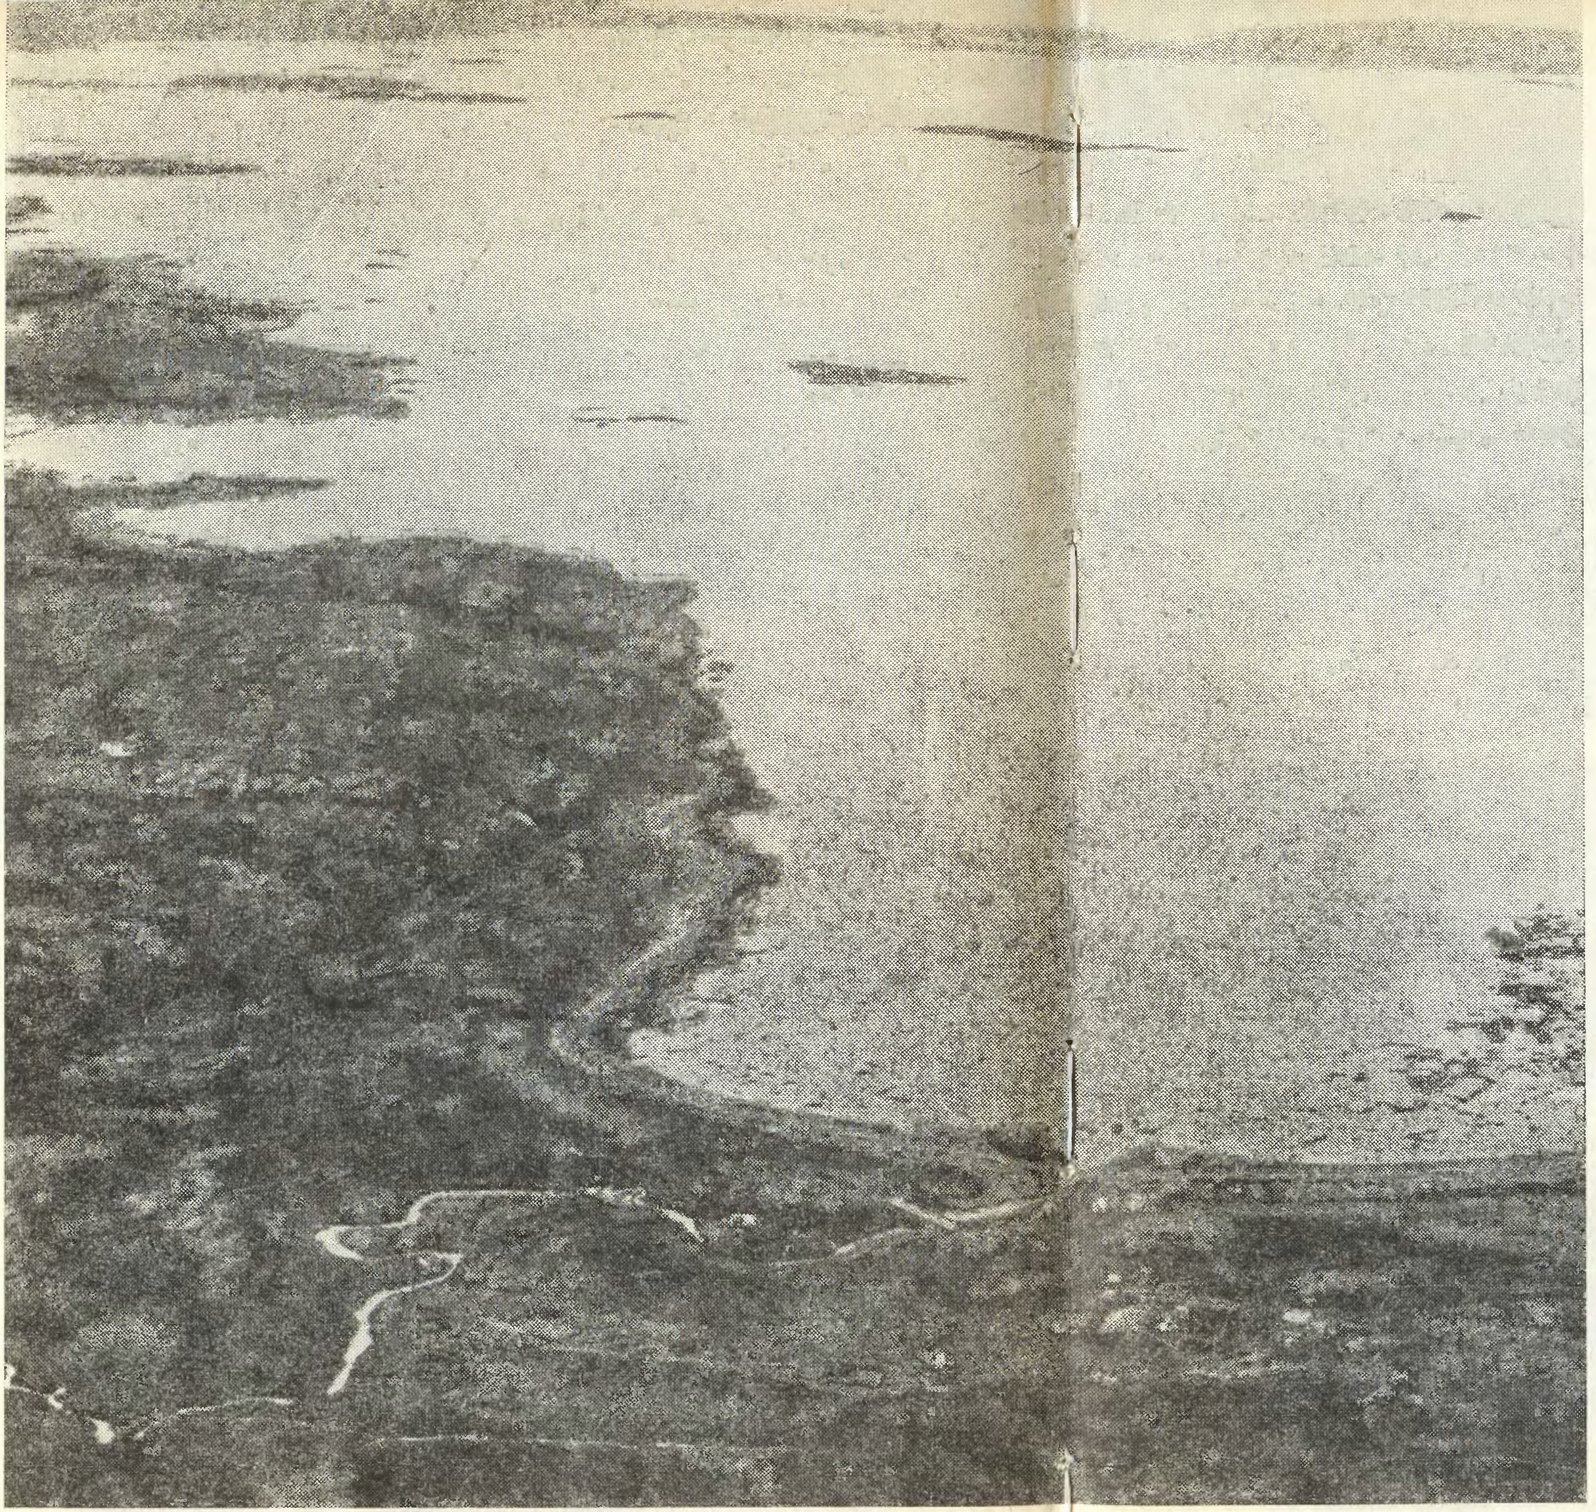 Аэрофото норманнского поселения в Ланс-о-Мидоузе на крайнем севере Ньюфаундленда. Автор открыл его в 1960 г.: четыре года продолжались археологические раскопки. Важнейшие раскопы накрыты павильонами. Самый большой раскоп — крайний справа, за рекой в павильоне находятся остатки кузницы. Равнина и рыбачий поселок расположены правее, их не видно на снимке